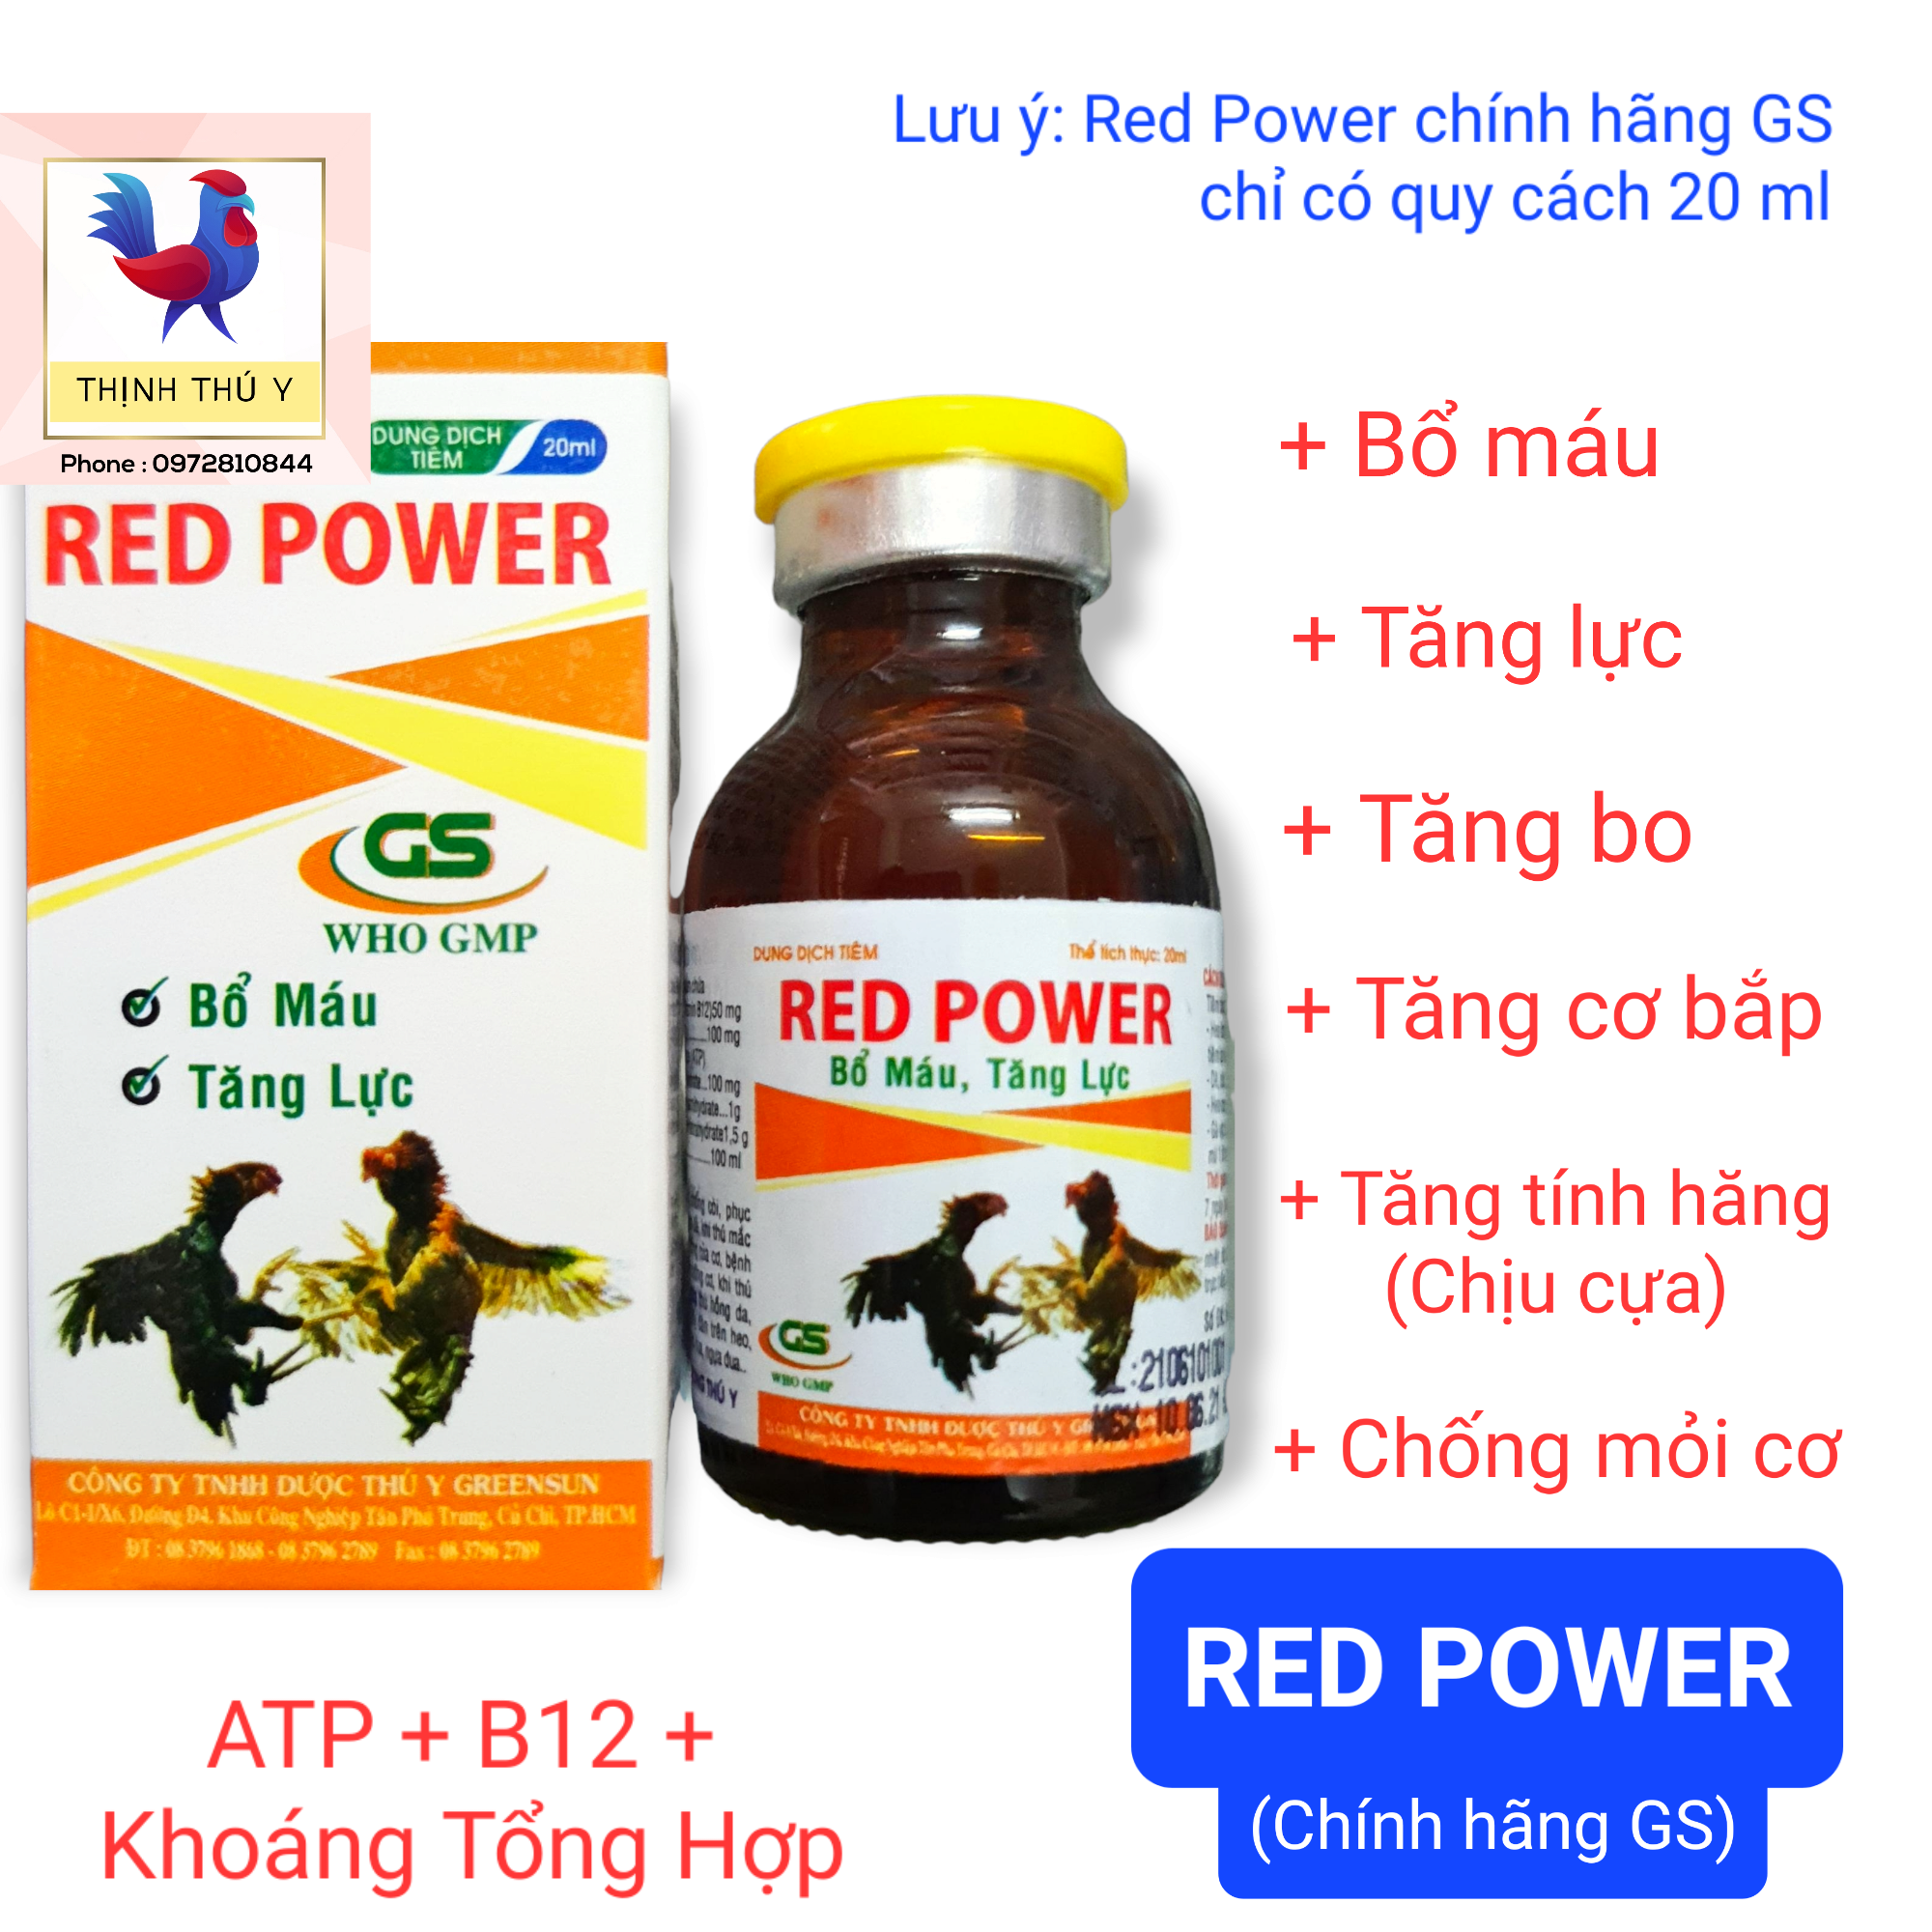 GS RED POWER (20ml) - ATP + Vitamin B12. Bổ máu tăng lực tăng bo dưỡng gân cơ chống mỏi cơ tăng tính hăng chịu cựa cho gà đá (Date 12/2024)